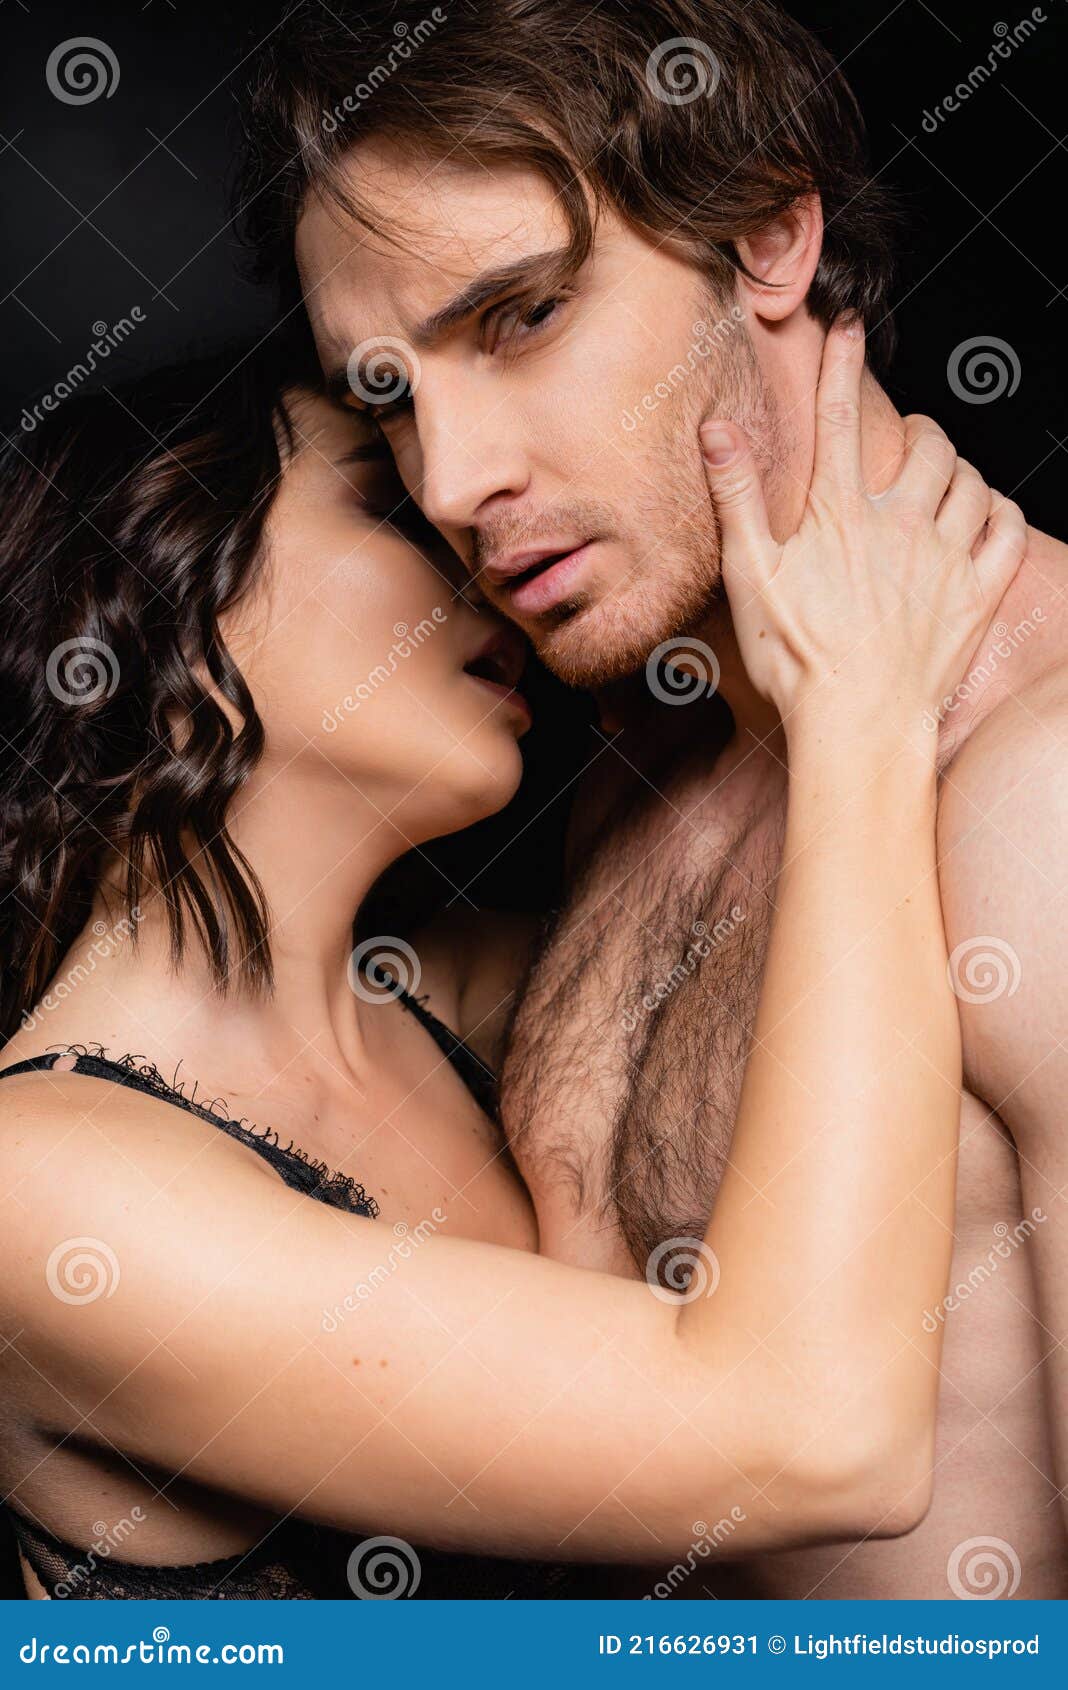 Hot Women Naked Kissing